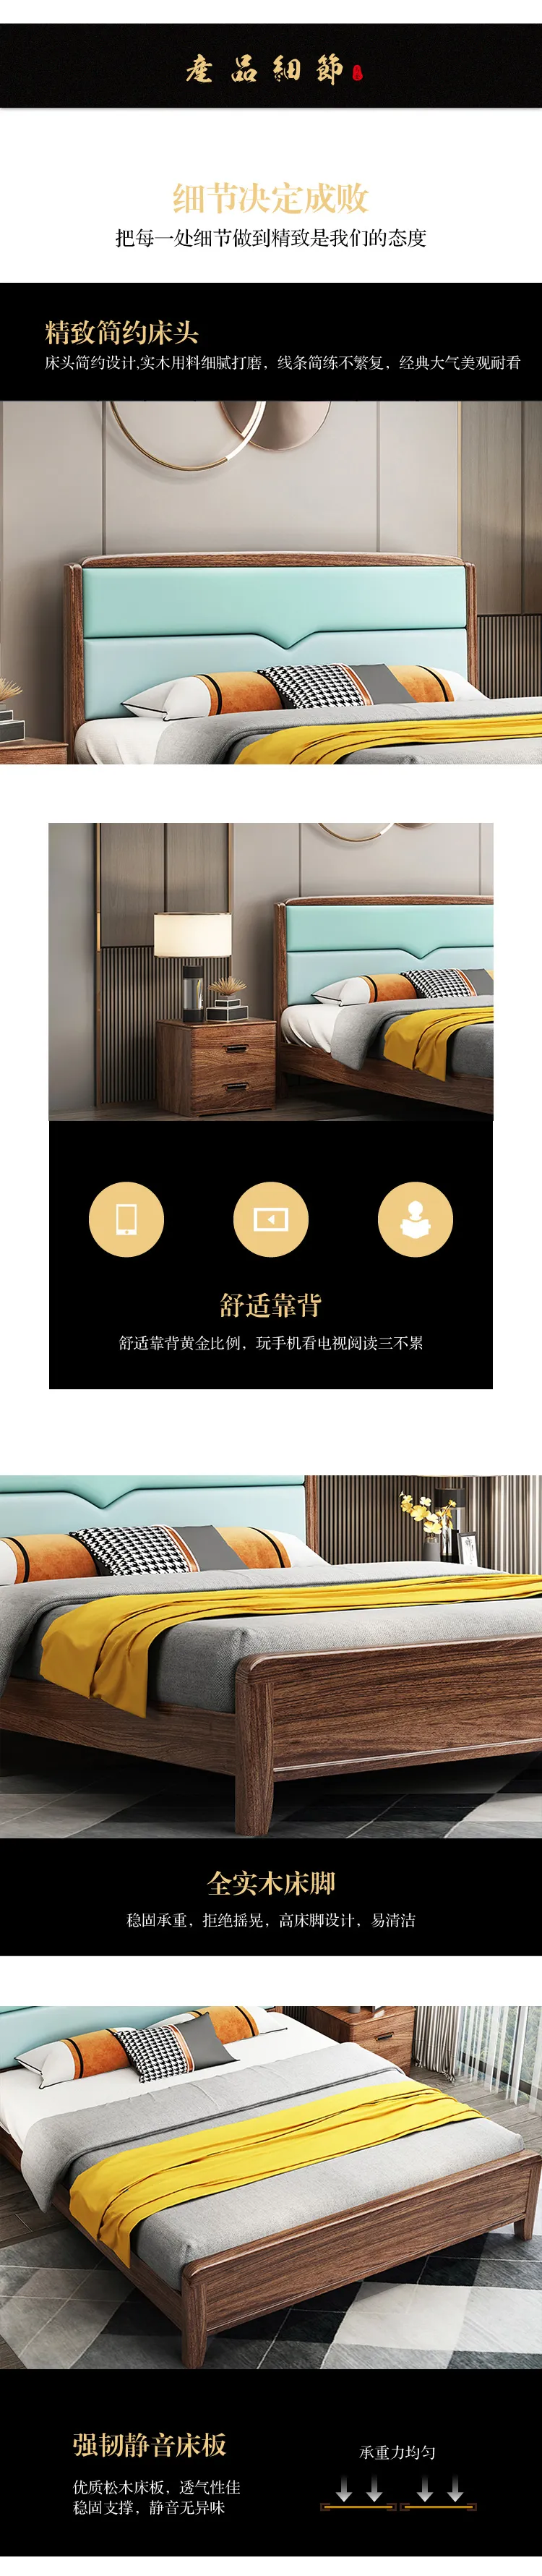 华松居 现代中式乌金木实木床1.8m双人床现代简约 #653(图5)